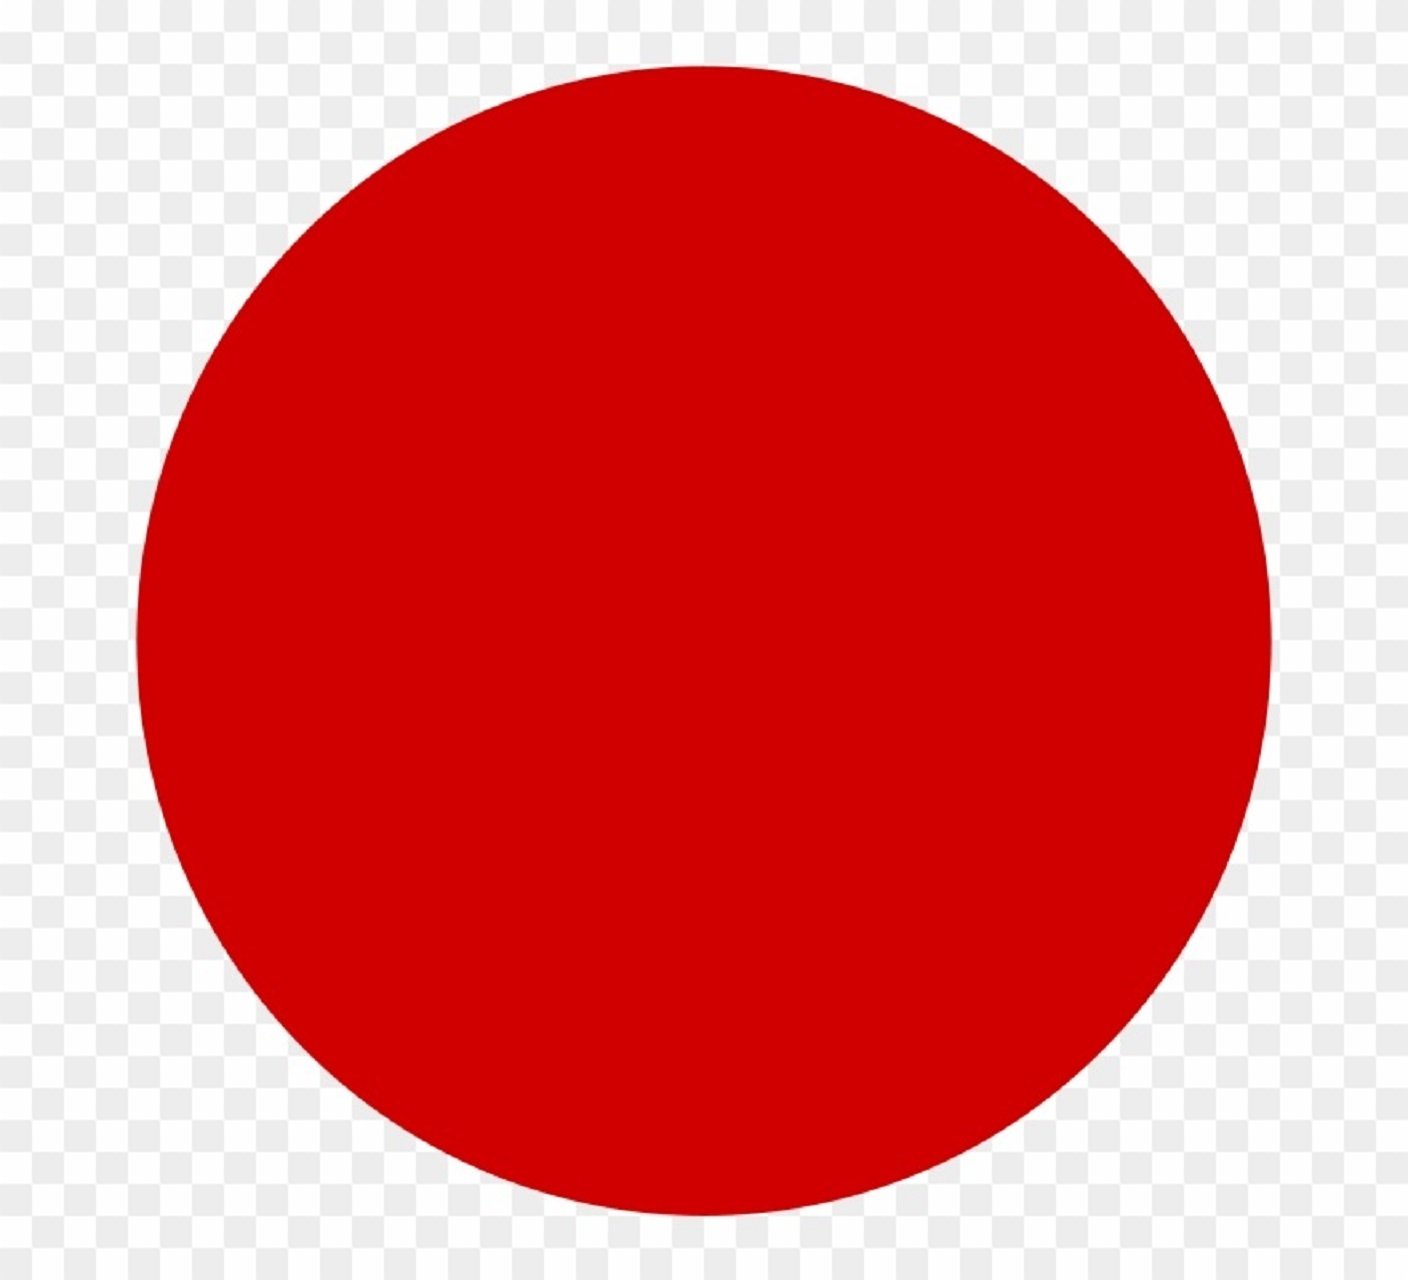 Круг з. Красный круг. Большой красный круг. Красный кружок. Красный кружок на прозрачном фоне.